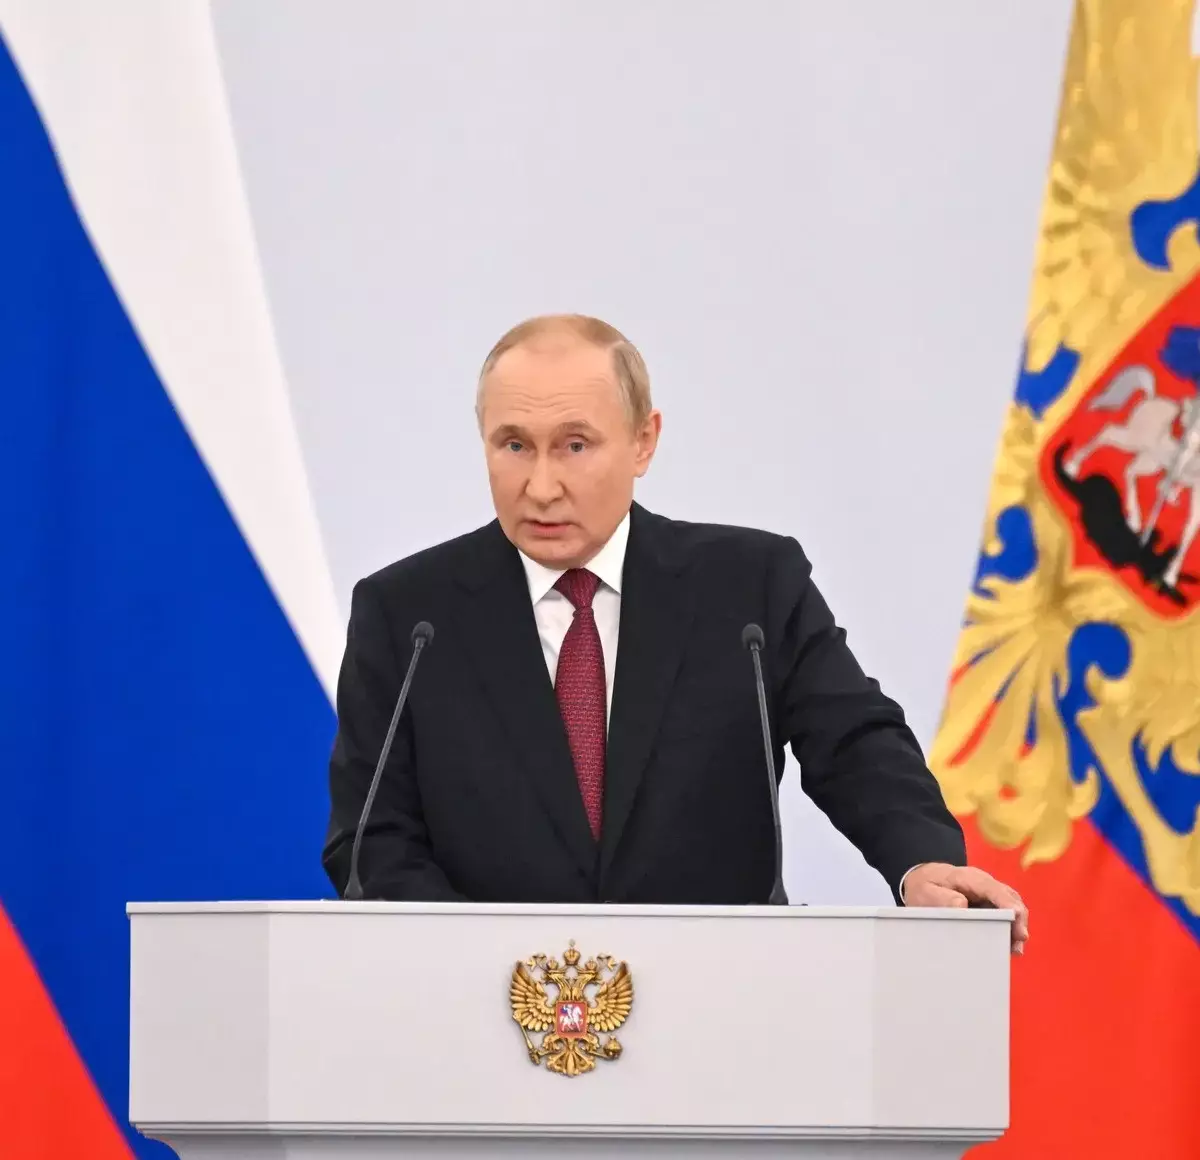 NI: выступление Путина в Георгиевском зале – это новая Мюнхенская речь